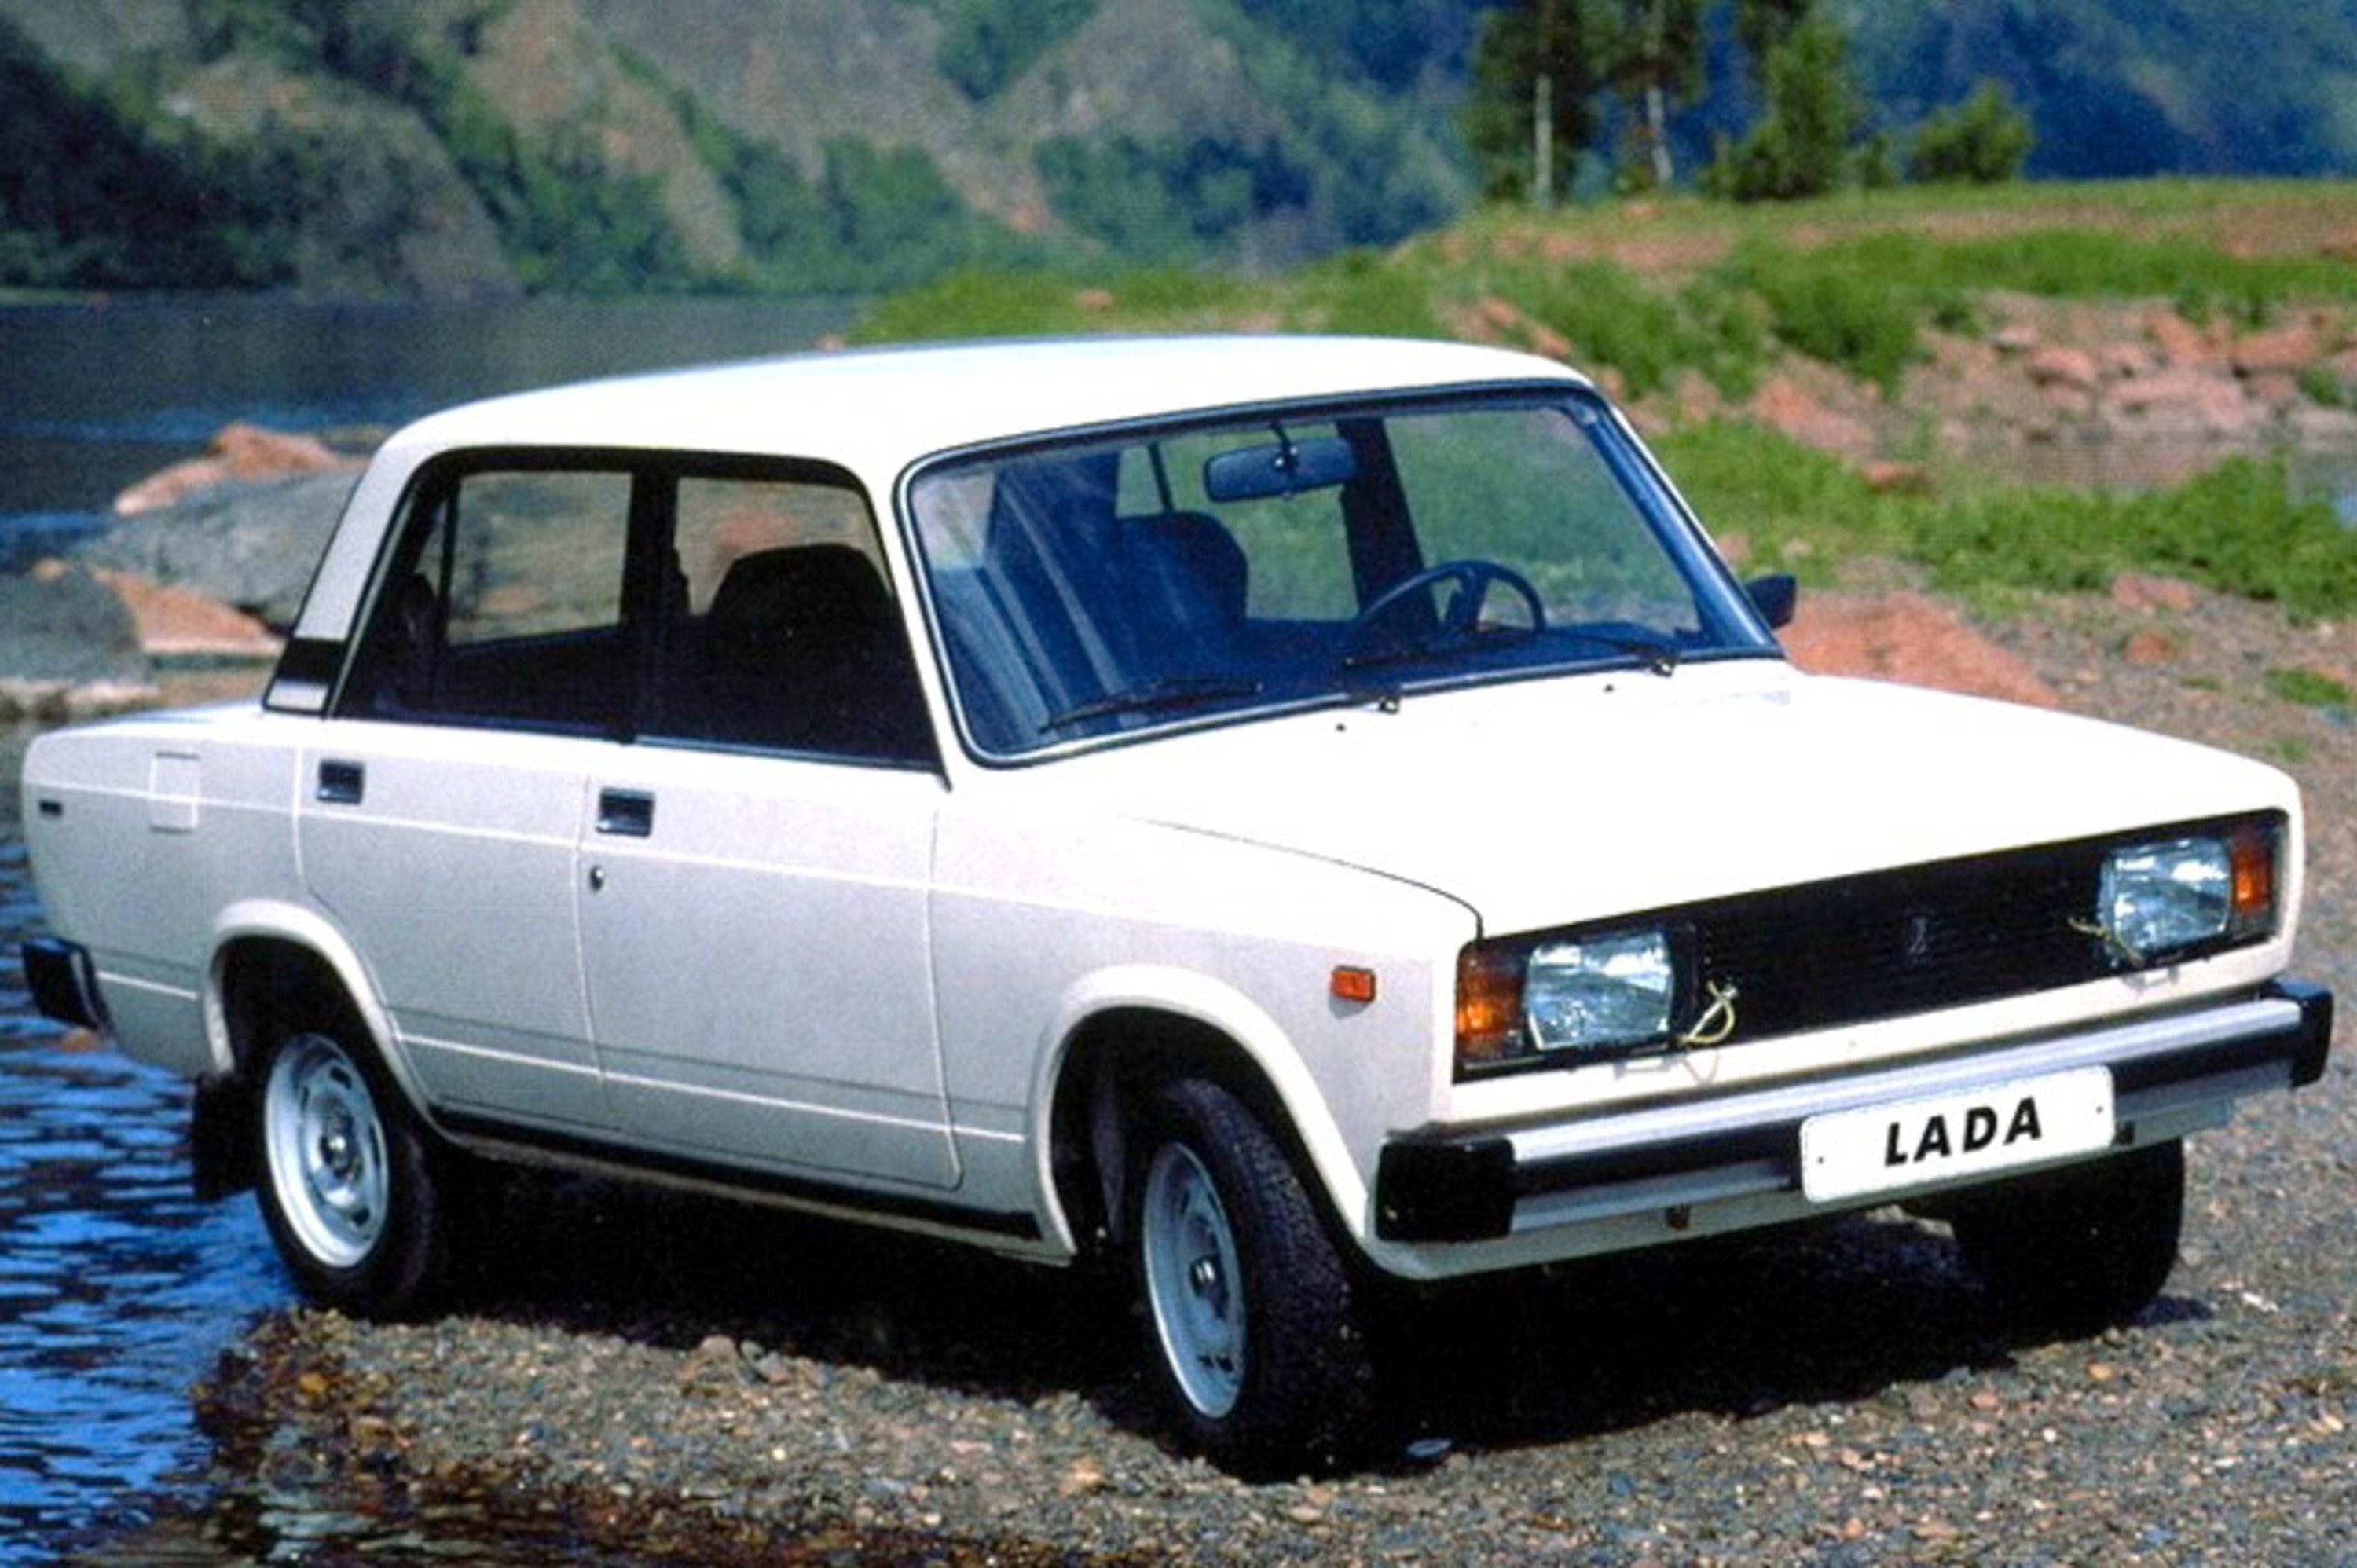 Lada Serie 124/125 (1990-92)